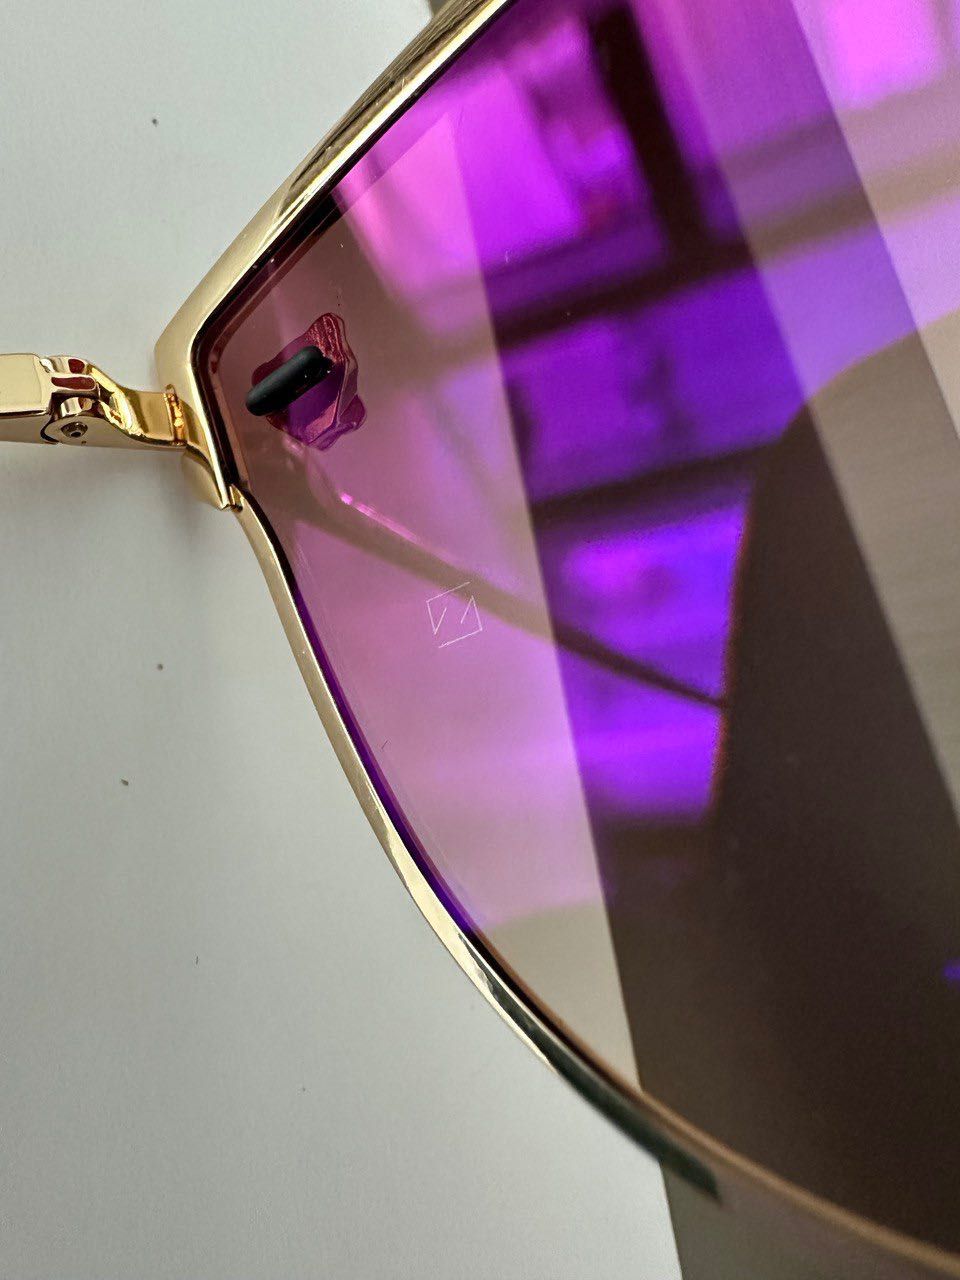 Солнцезащитные очки Cartier аутентичные